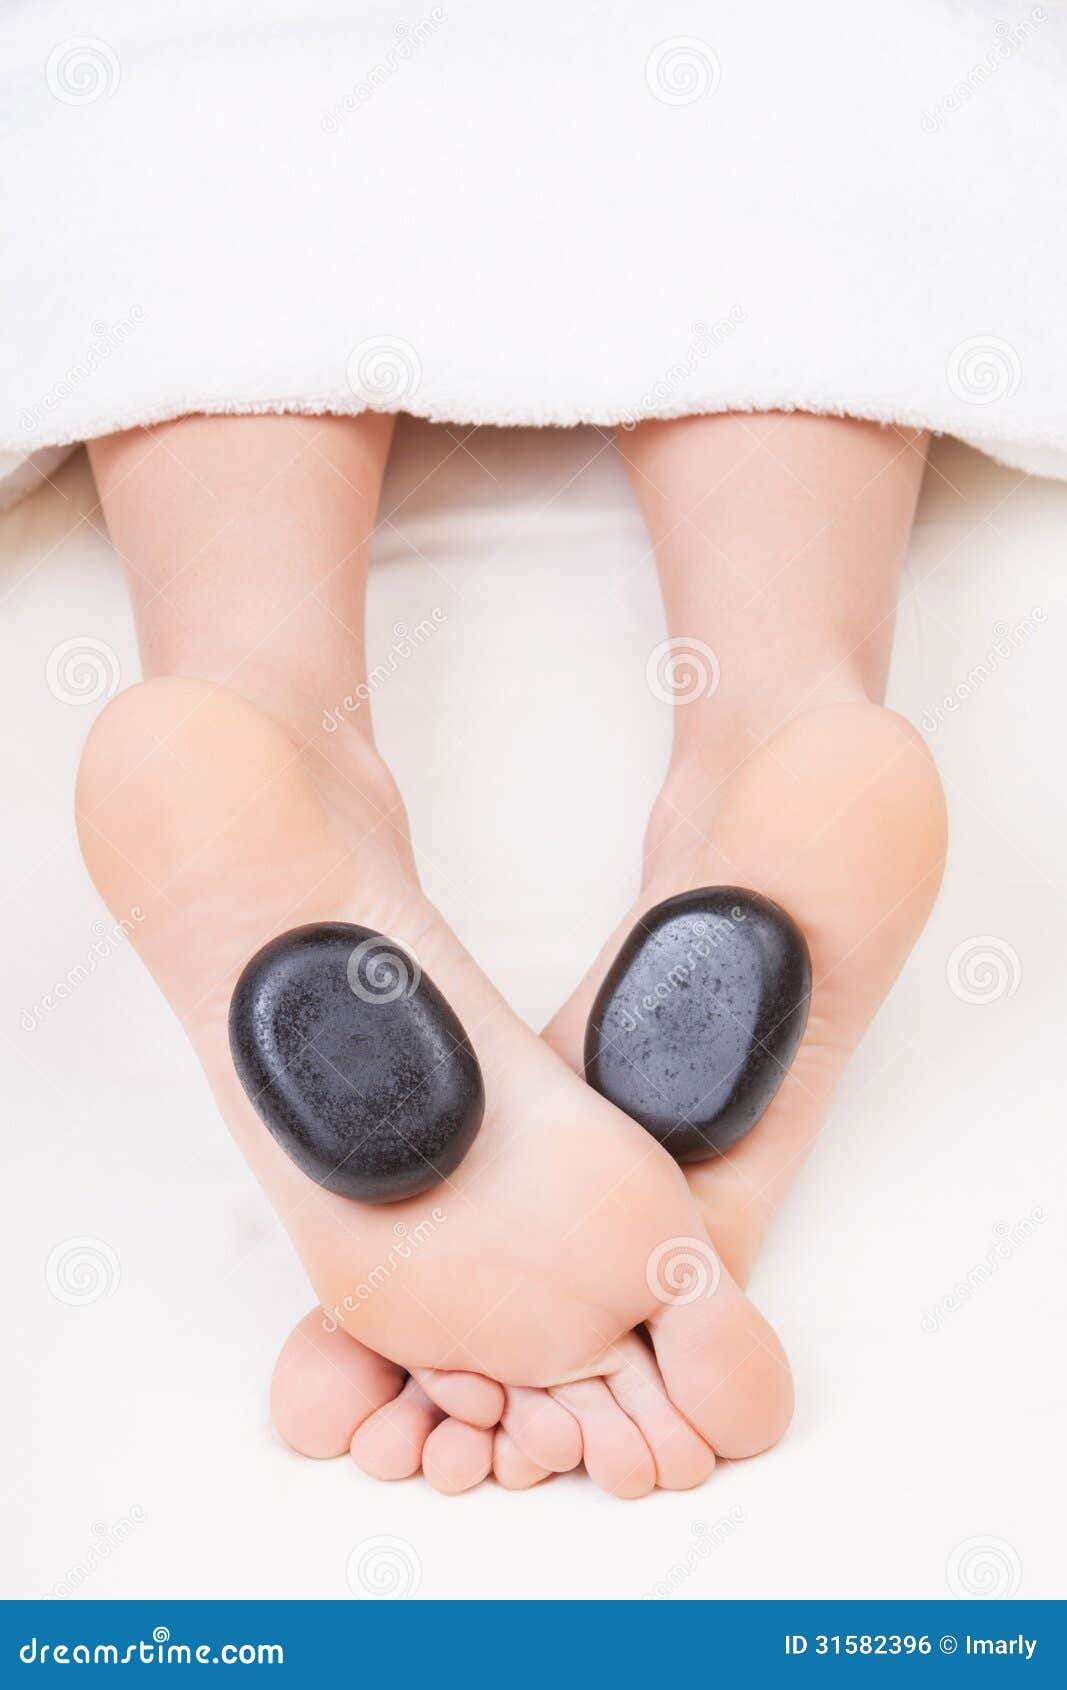 Hot Stone Feet Massage Royalty Free Stock Image Image